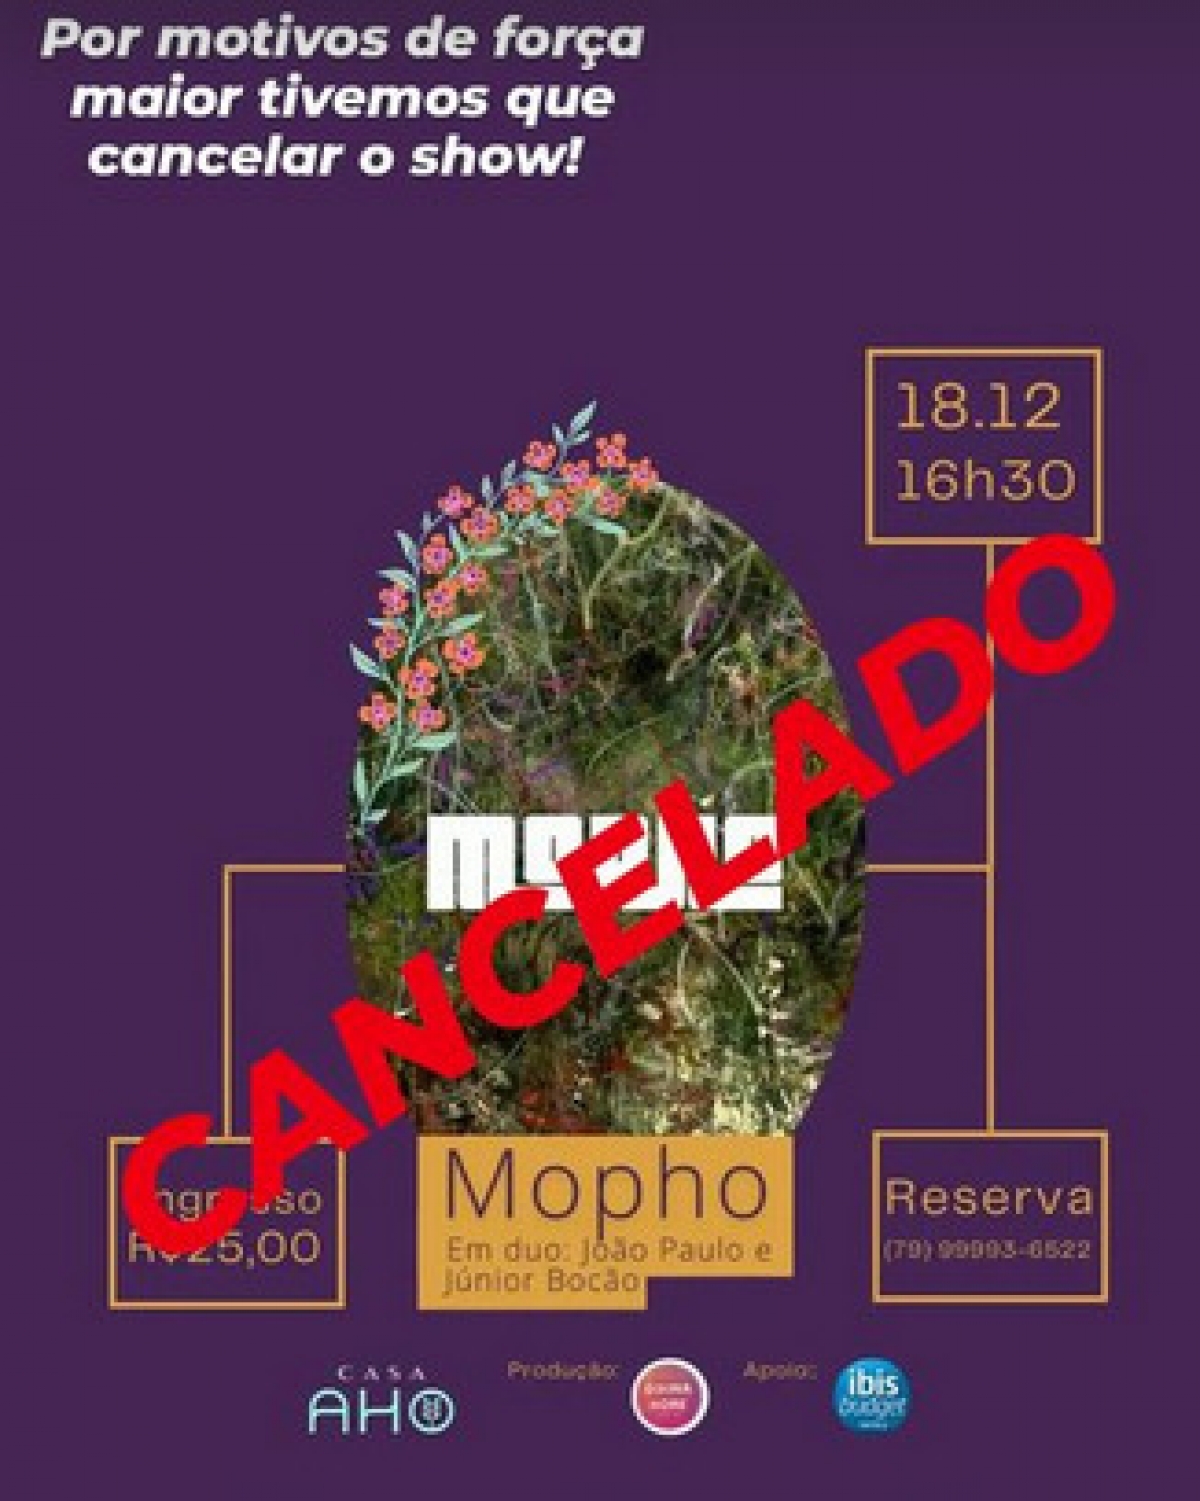 Nota de cancelamento: Por motivos de força maior, show do Mopho é cancelado em Aracaju (Imagem: Divulgação)